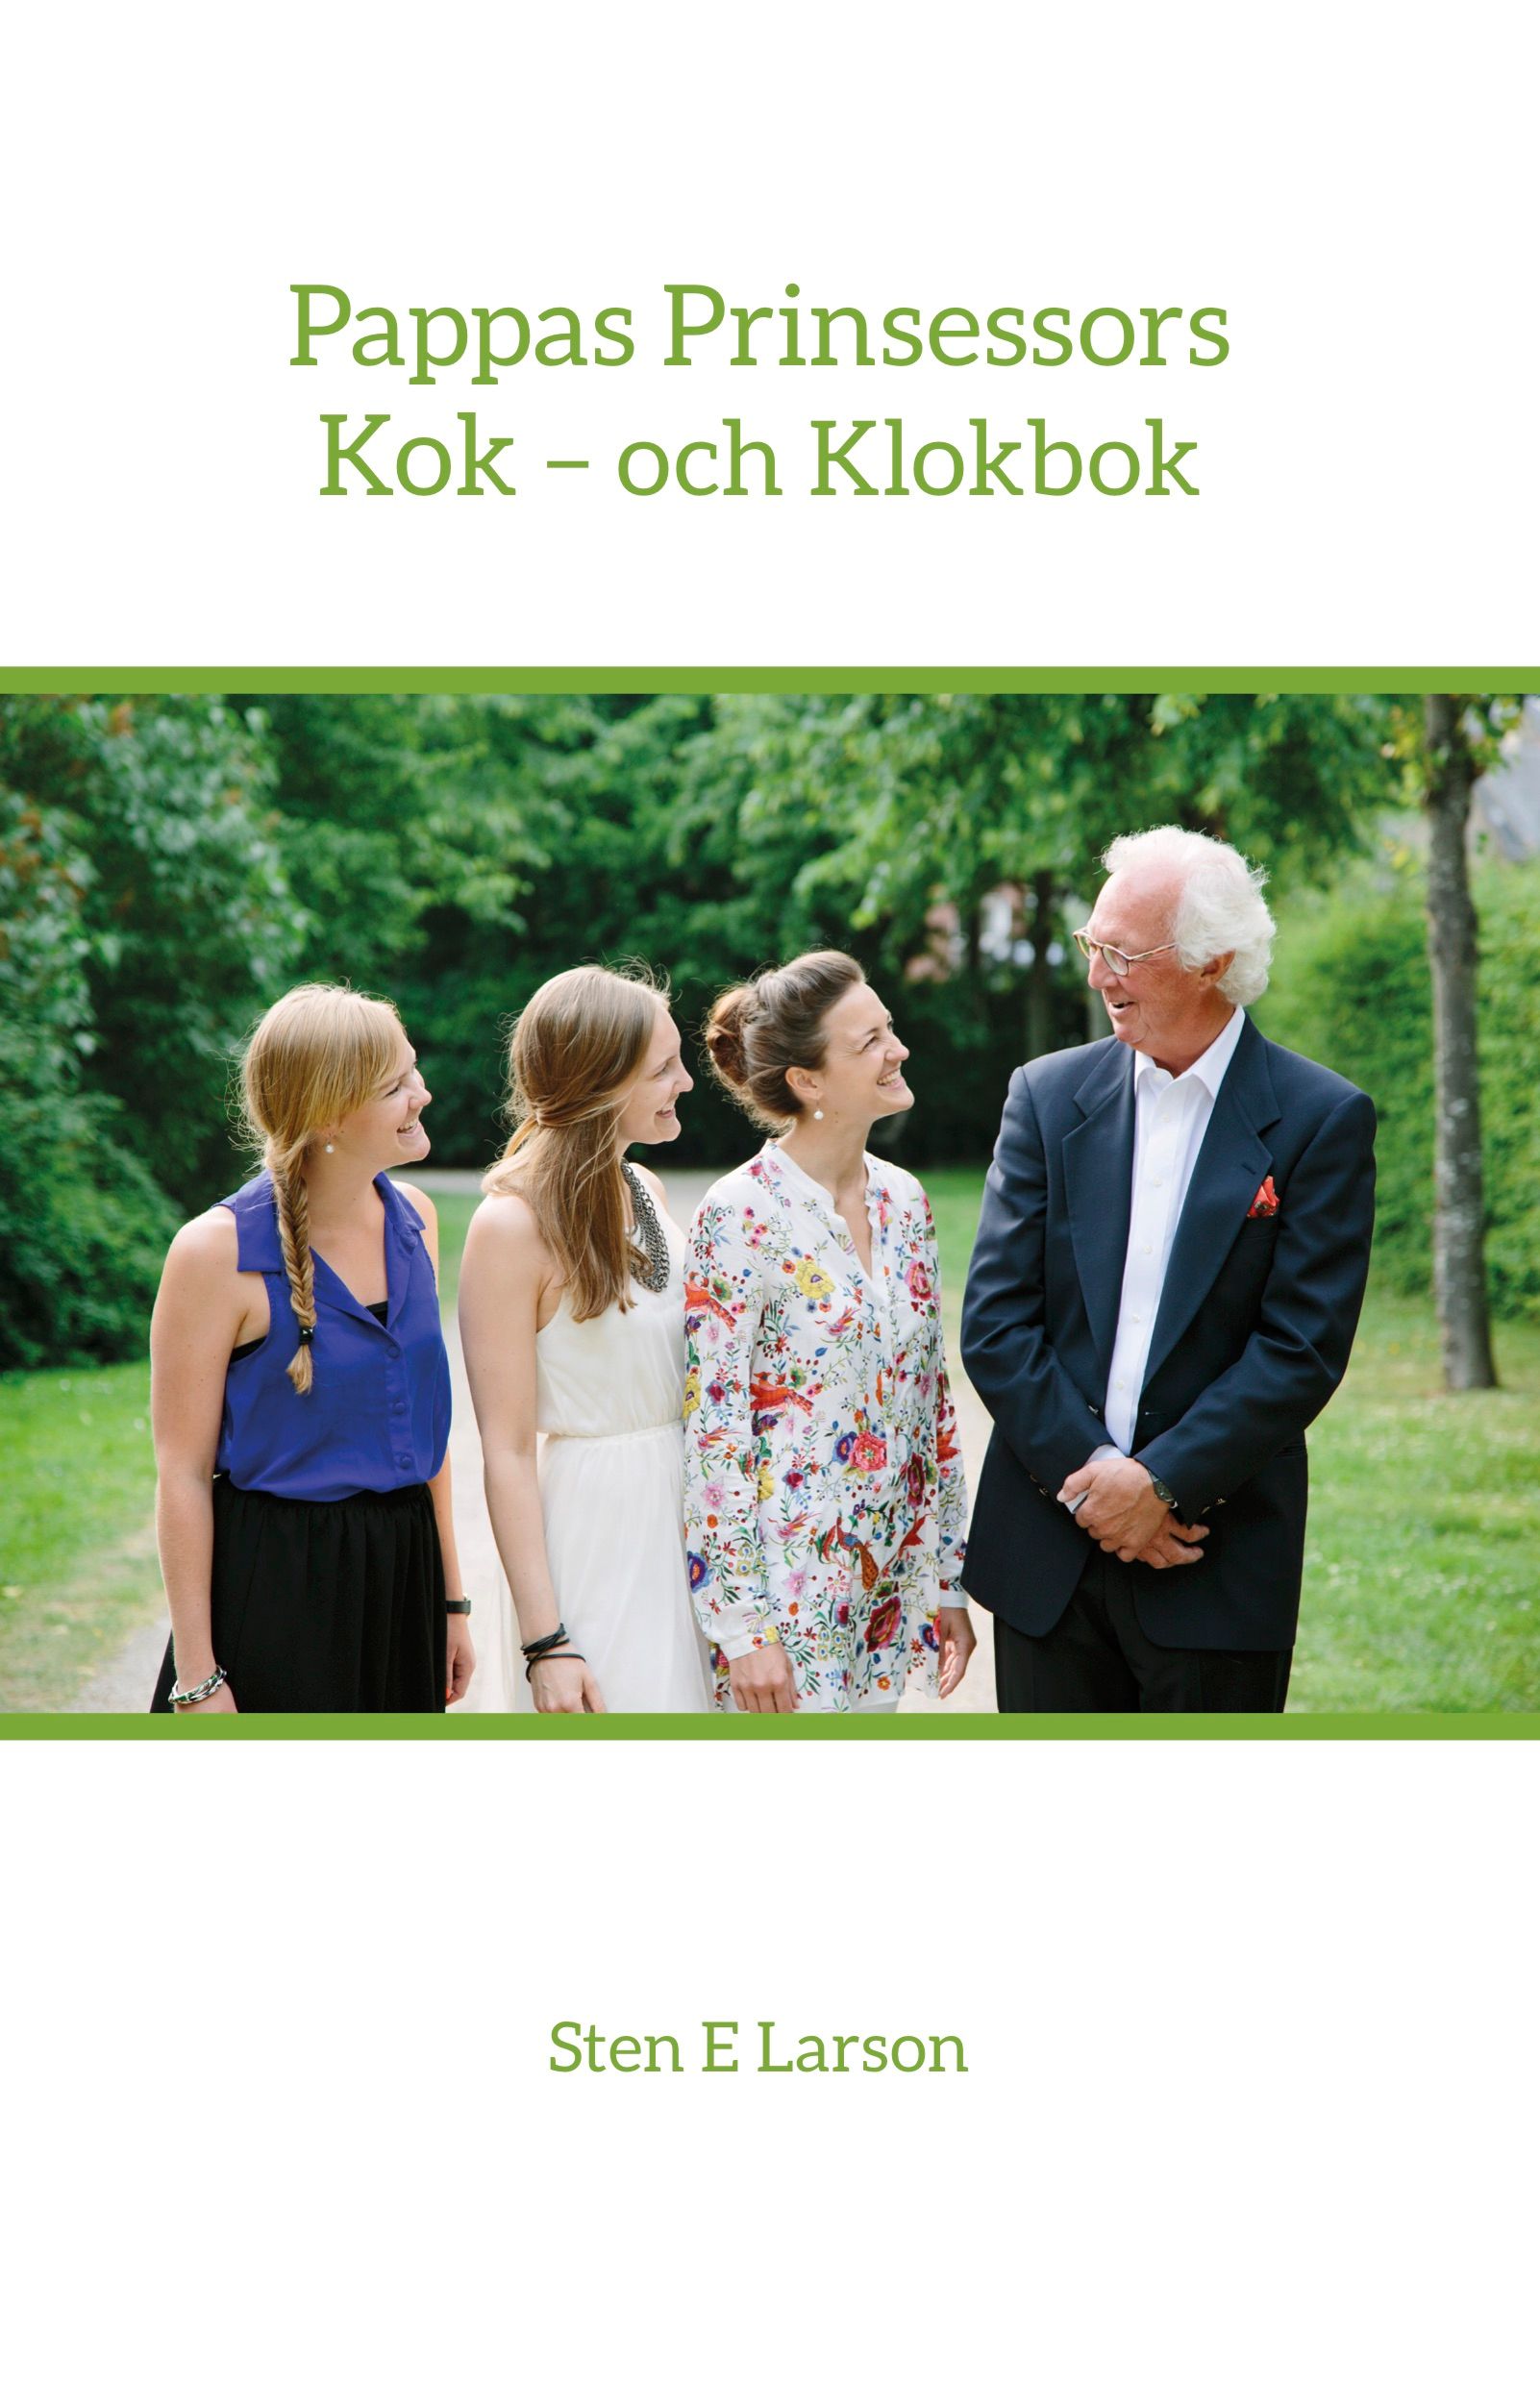 Pappas Prinsessors Kok - och Klokbok, e-bok av Sten E Larson